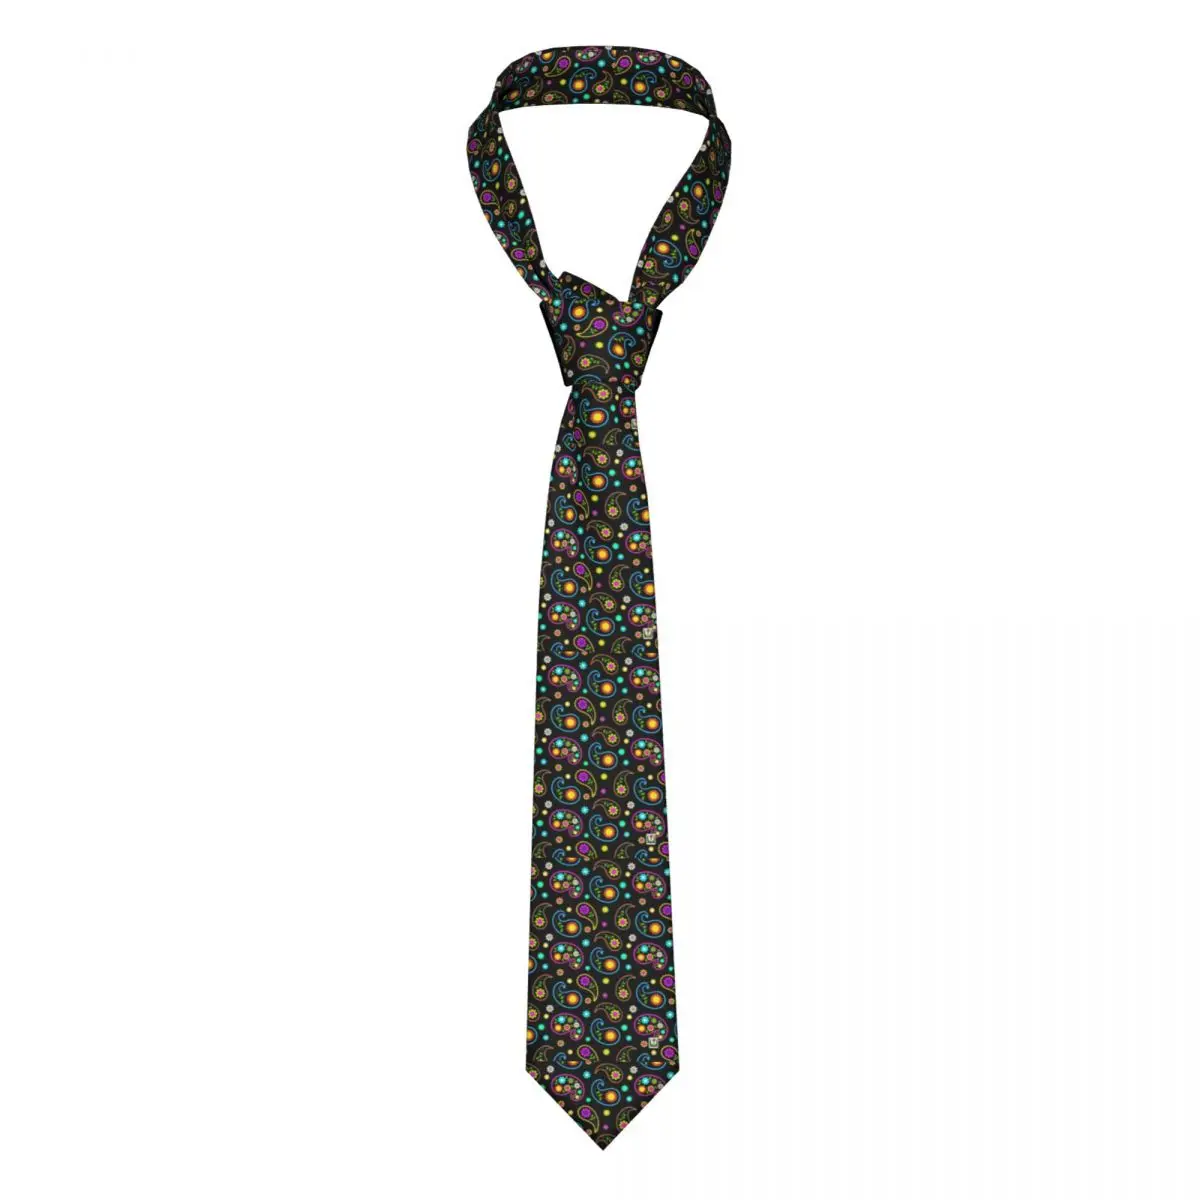 

Галстук с пейсли-принтом цветной цветочный деловой галстук из полиэстера и шелка Подарочная Мужская блузка галстук с принтом